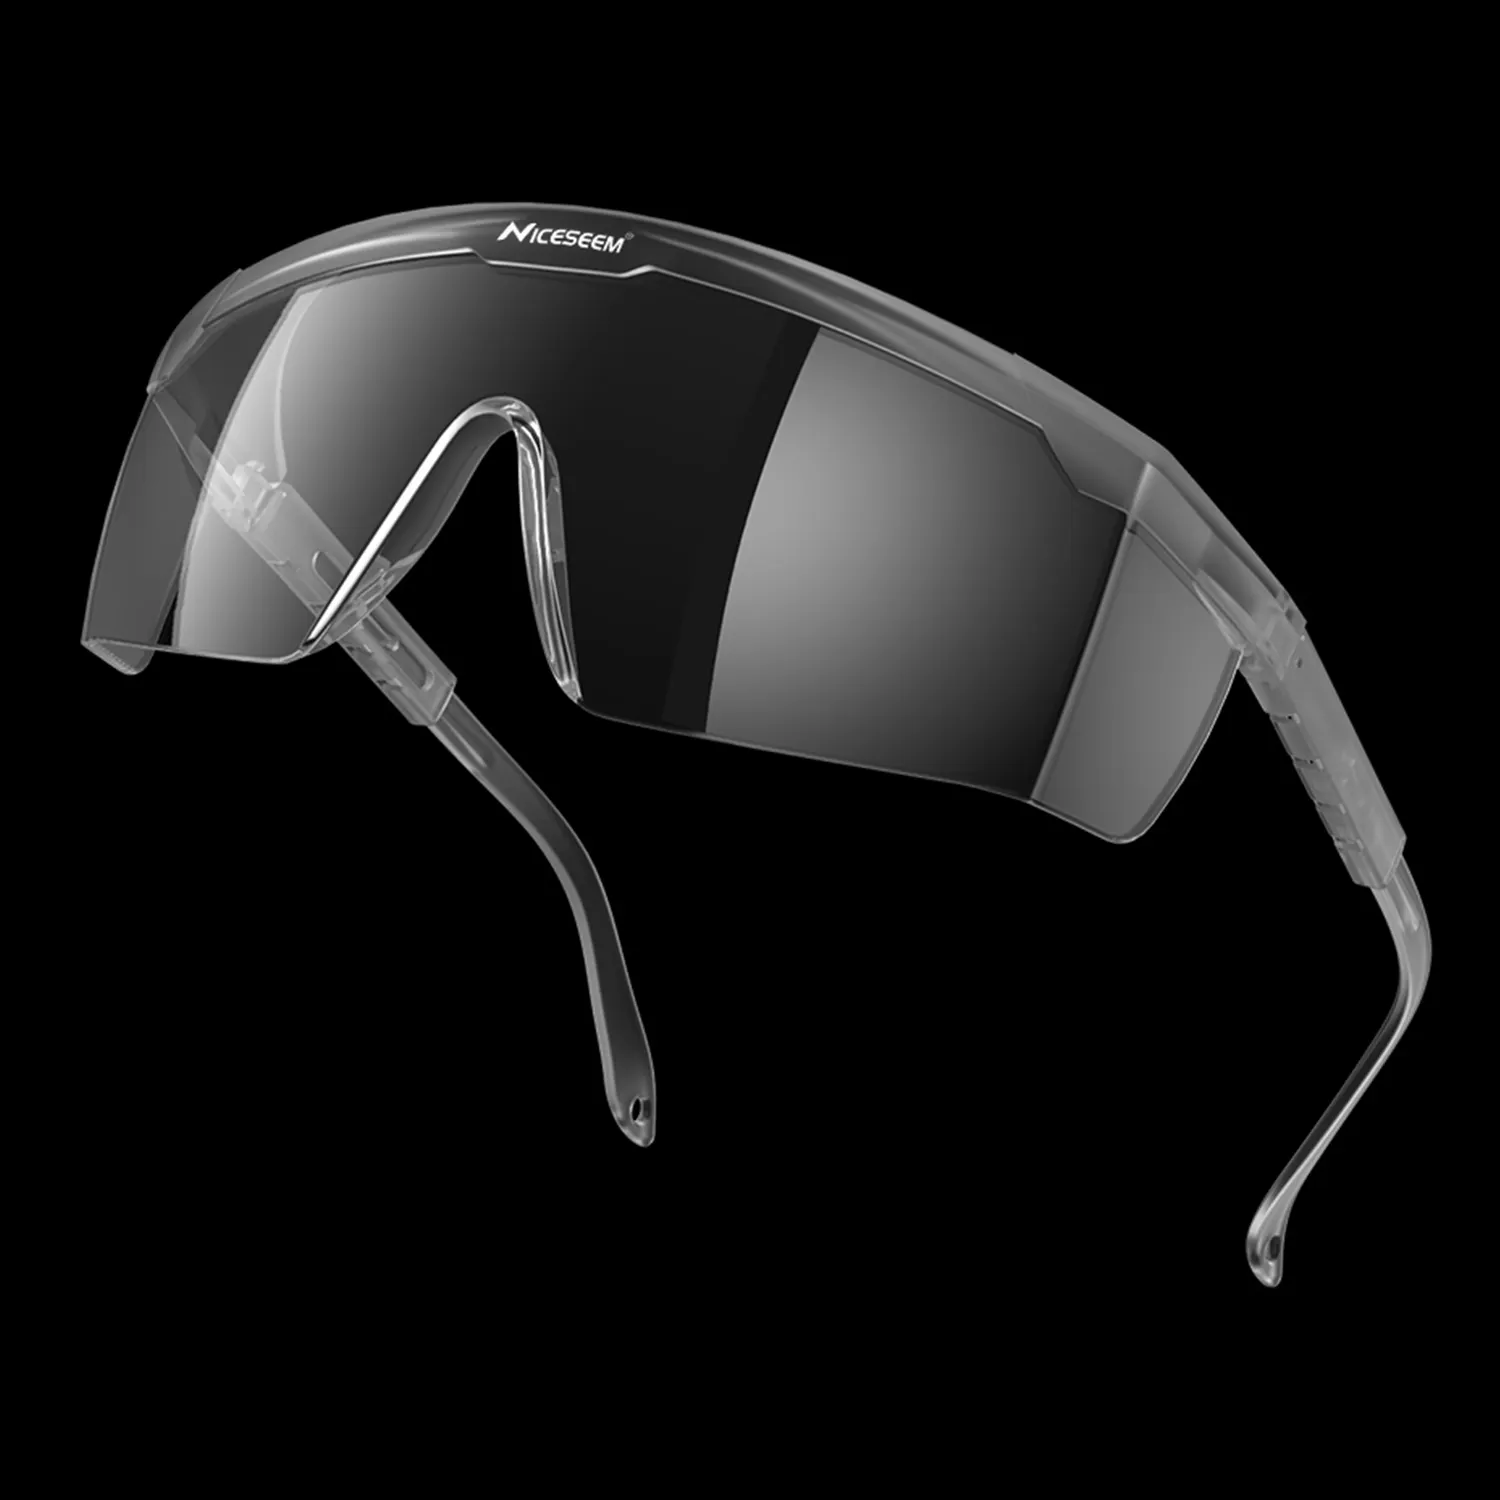 نظارات Ansi Z87 العصرية المربعة للسلامة تُصمم حسب الطلب وتتميز بتصميم جذاب